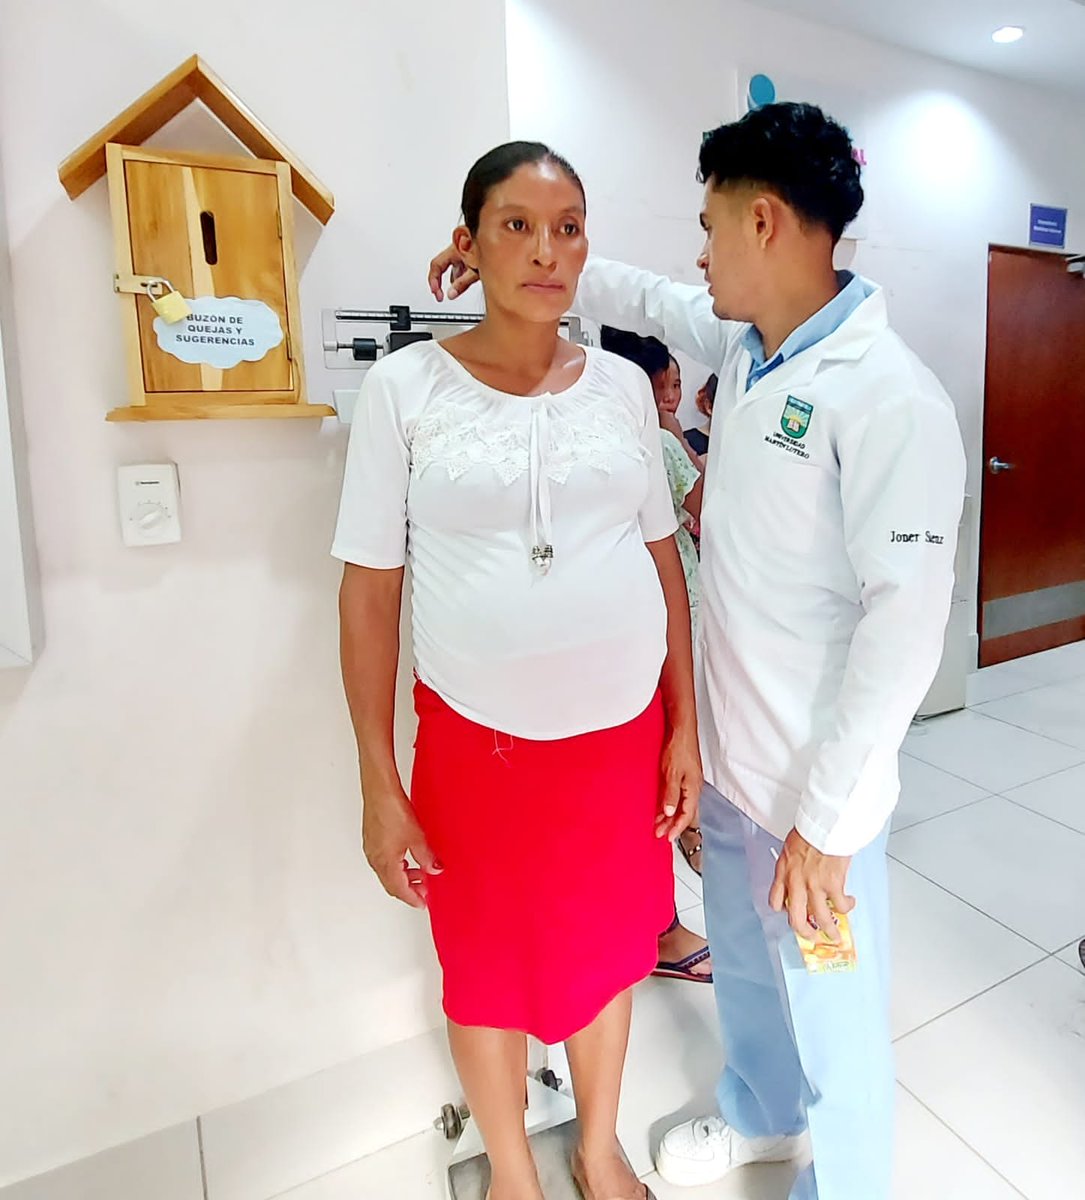 Embarazadas de #LasMinas recibieron atención especializada en el municipio Siuna, para valorar el sano desarrollo de sus bebés; y practicaron terapias de relajación.
 #BuenGobiernoSandinista
#FSLNOctubreVictorioso
#FSLNVencimosVenceremos